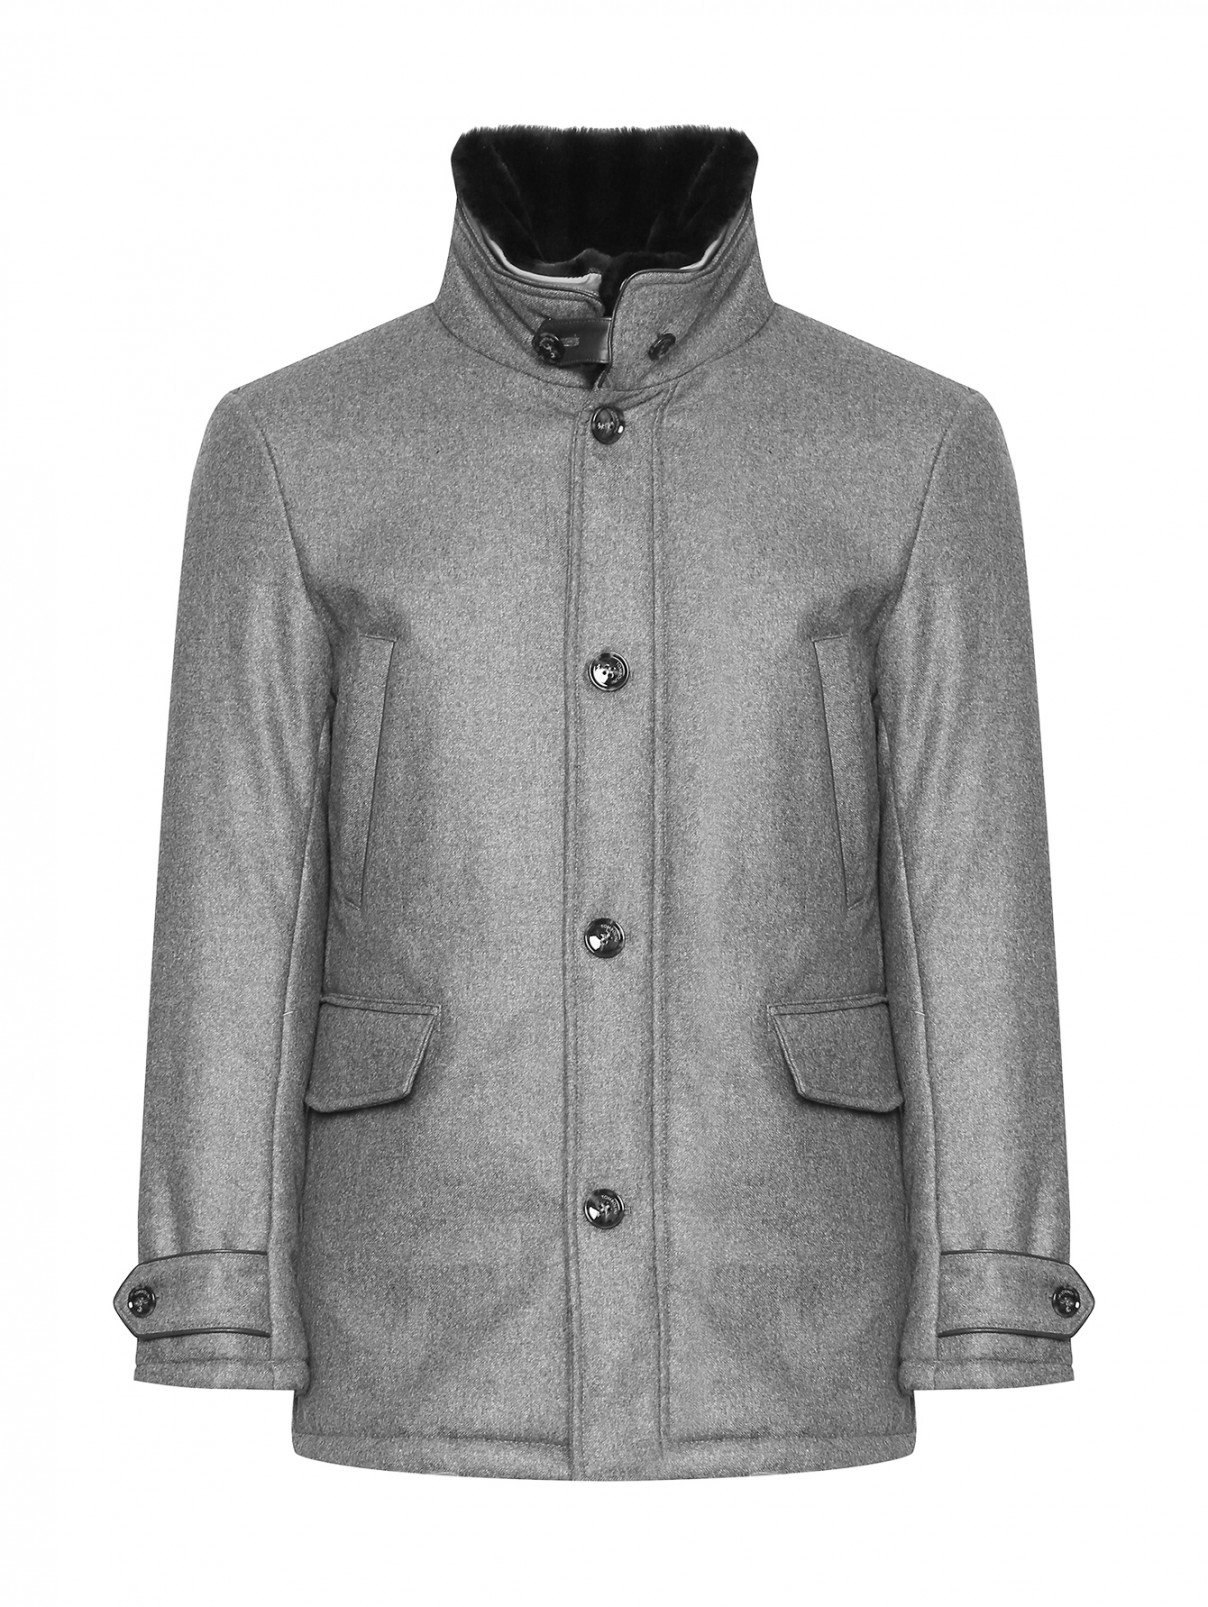 Утепленная куртка из шерсти со съемным воротником Tombolini  –  Общий вид  – Цвет:  Серый